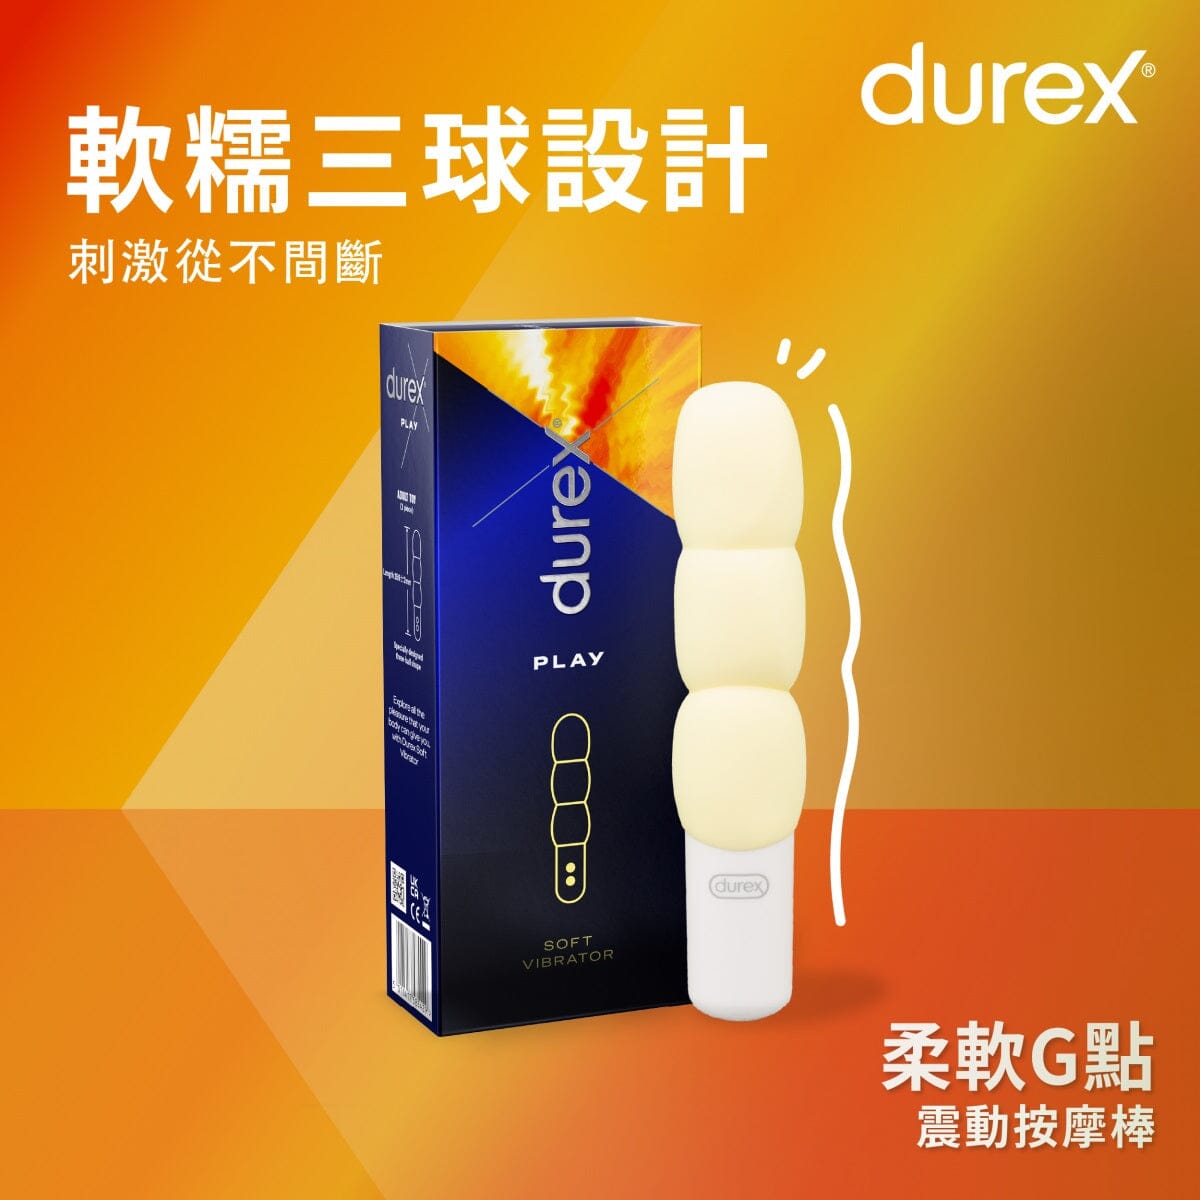 DUREX 柔軟 G 點震動按摩棒 購買